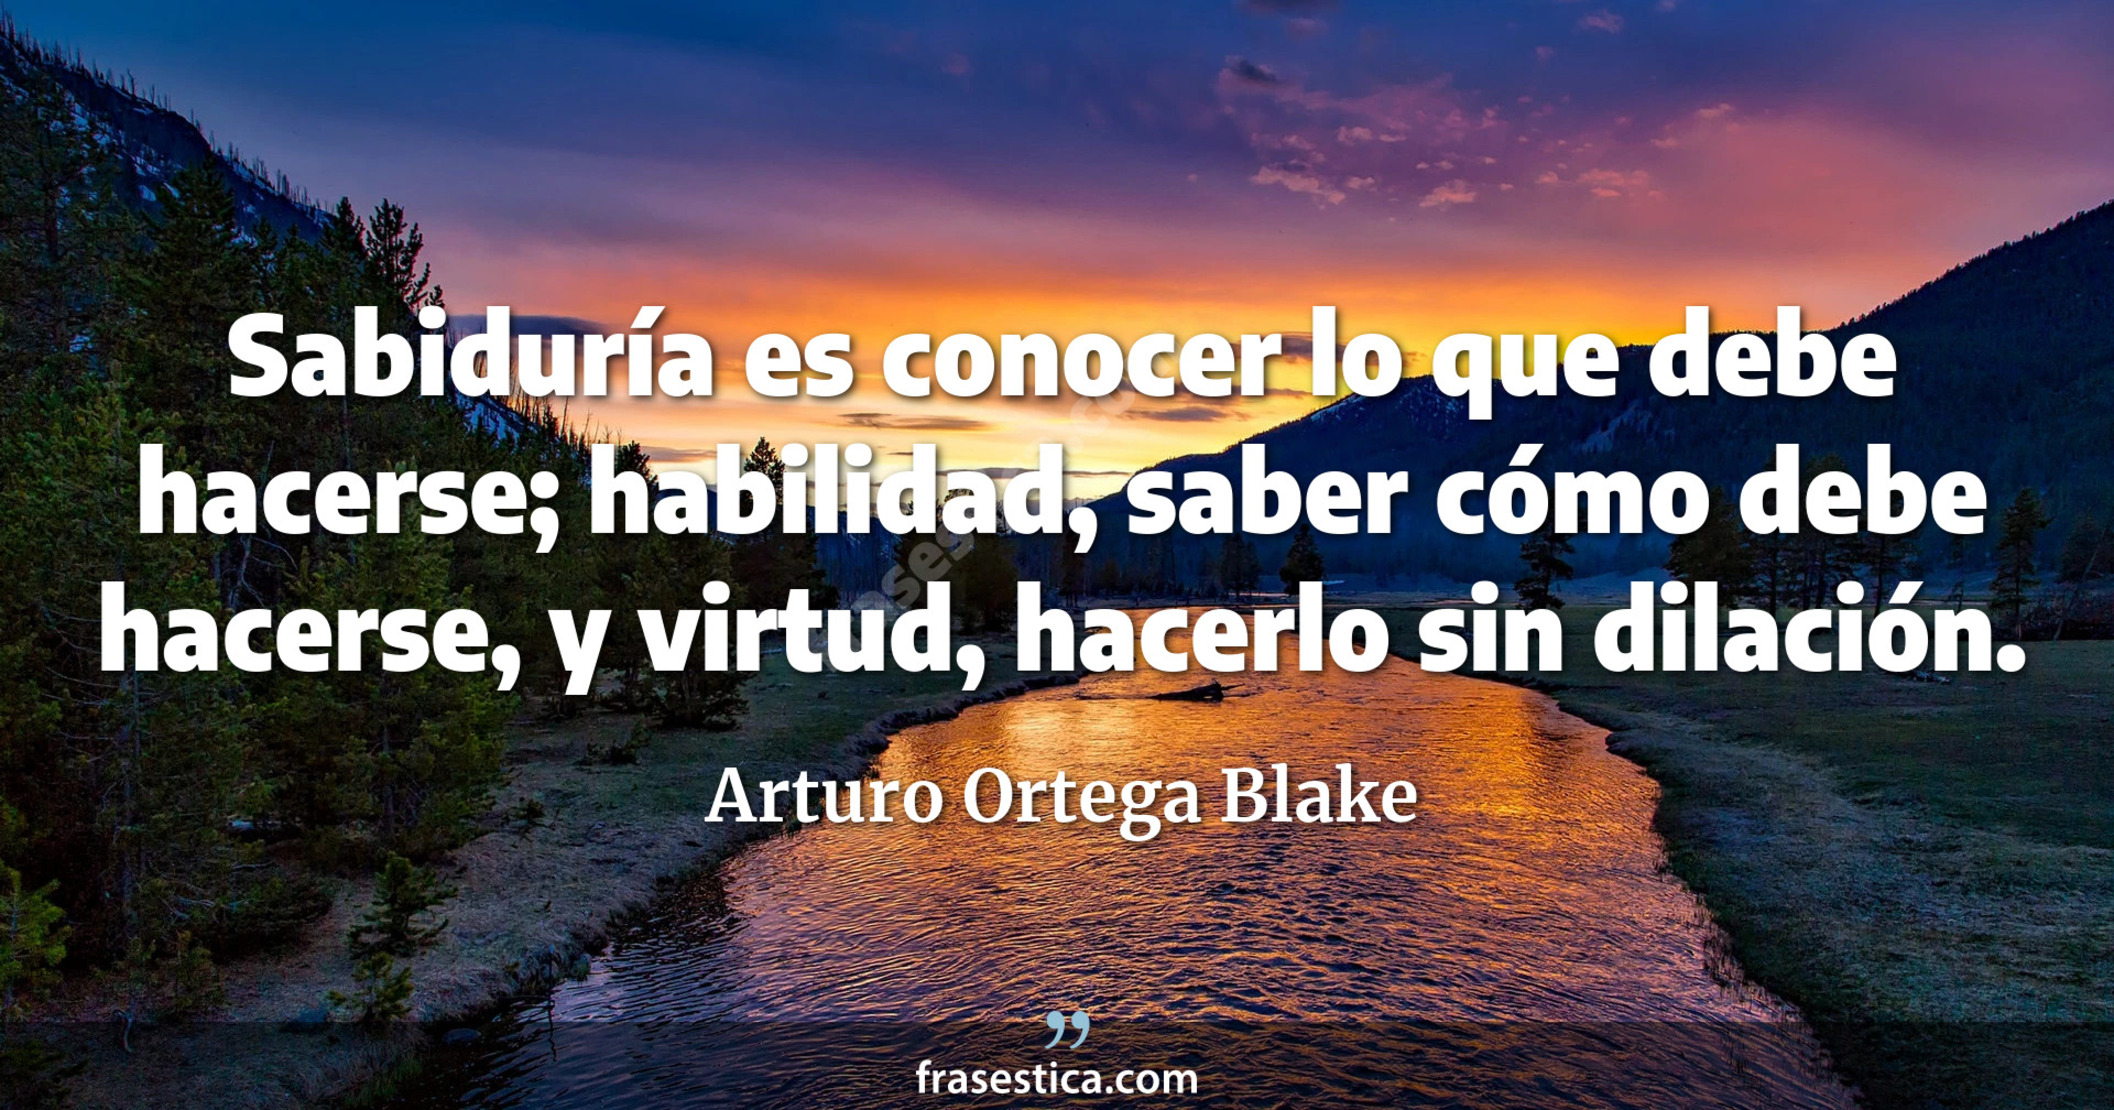 Sabiduría es conocer lo que debe hacerse; habilidad, saber cómo debe hacerse, y virtud, hacerlo sin dilación. - Arturo Ortega Blake